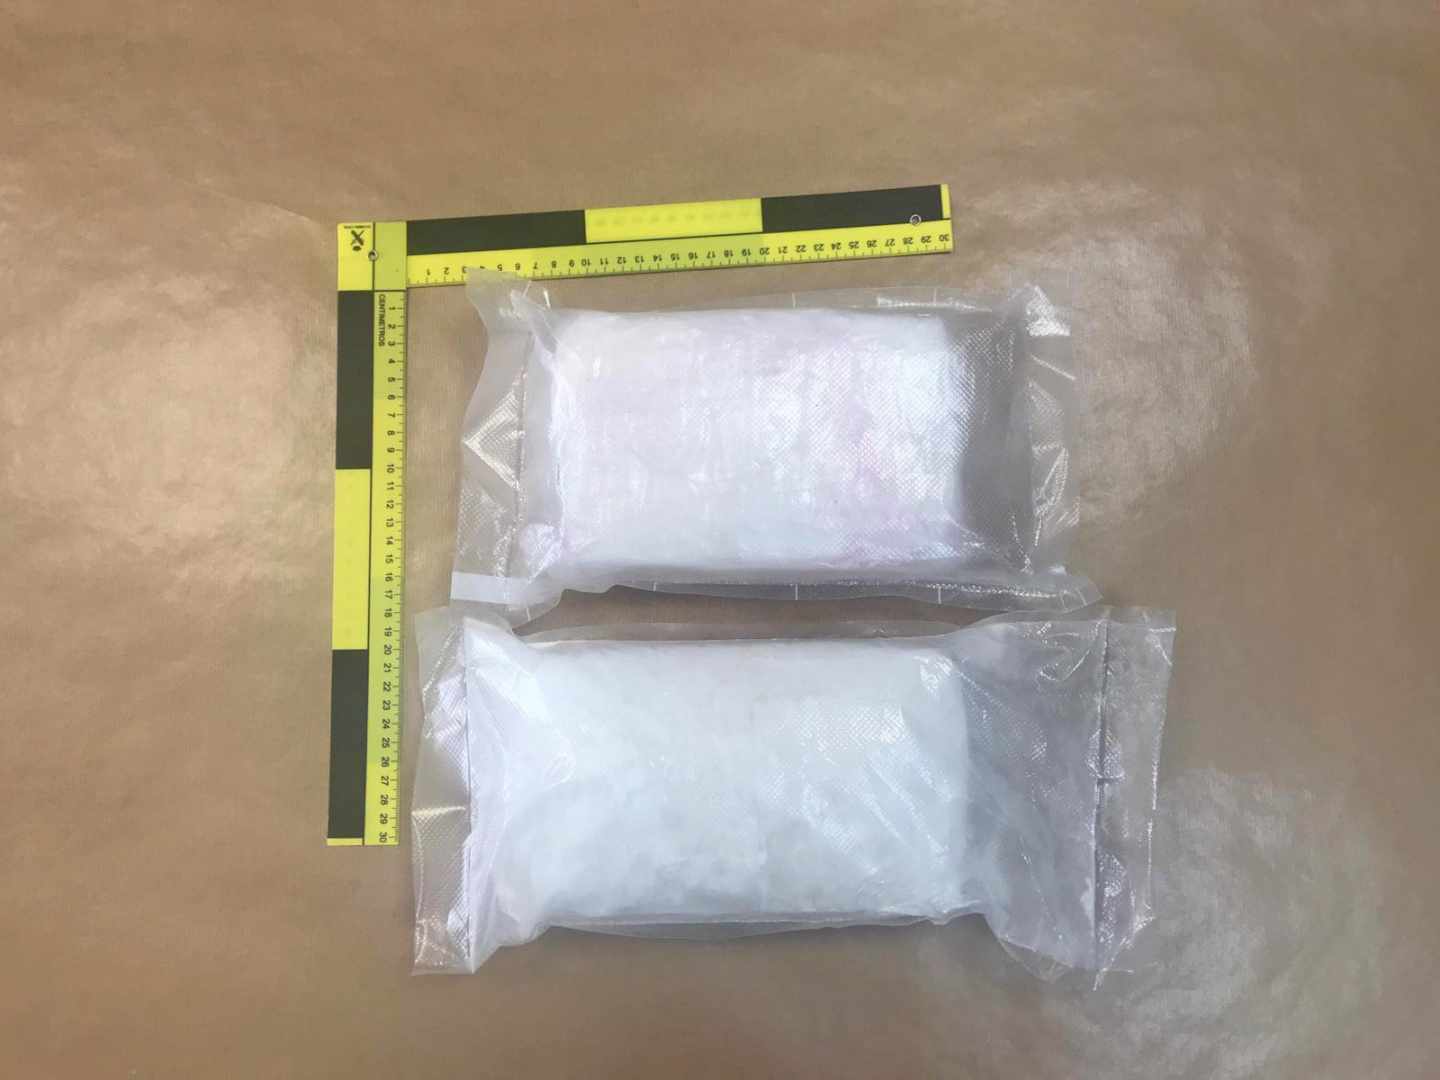 Dos detenidos en Barajas al ir a recoger un palé con 53 kilos de cocaína